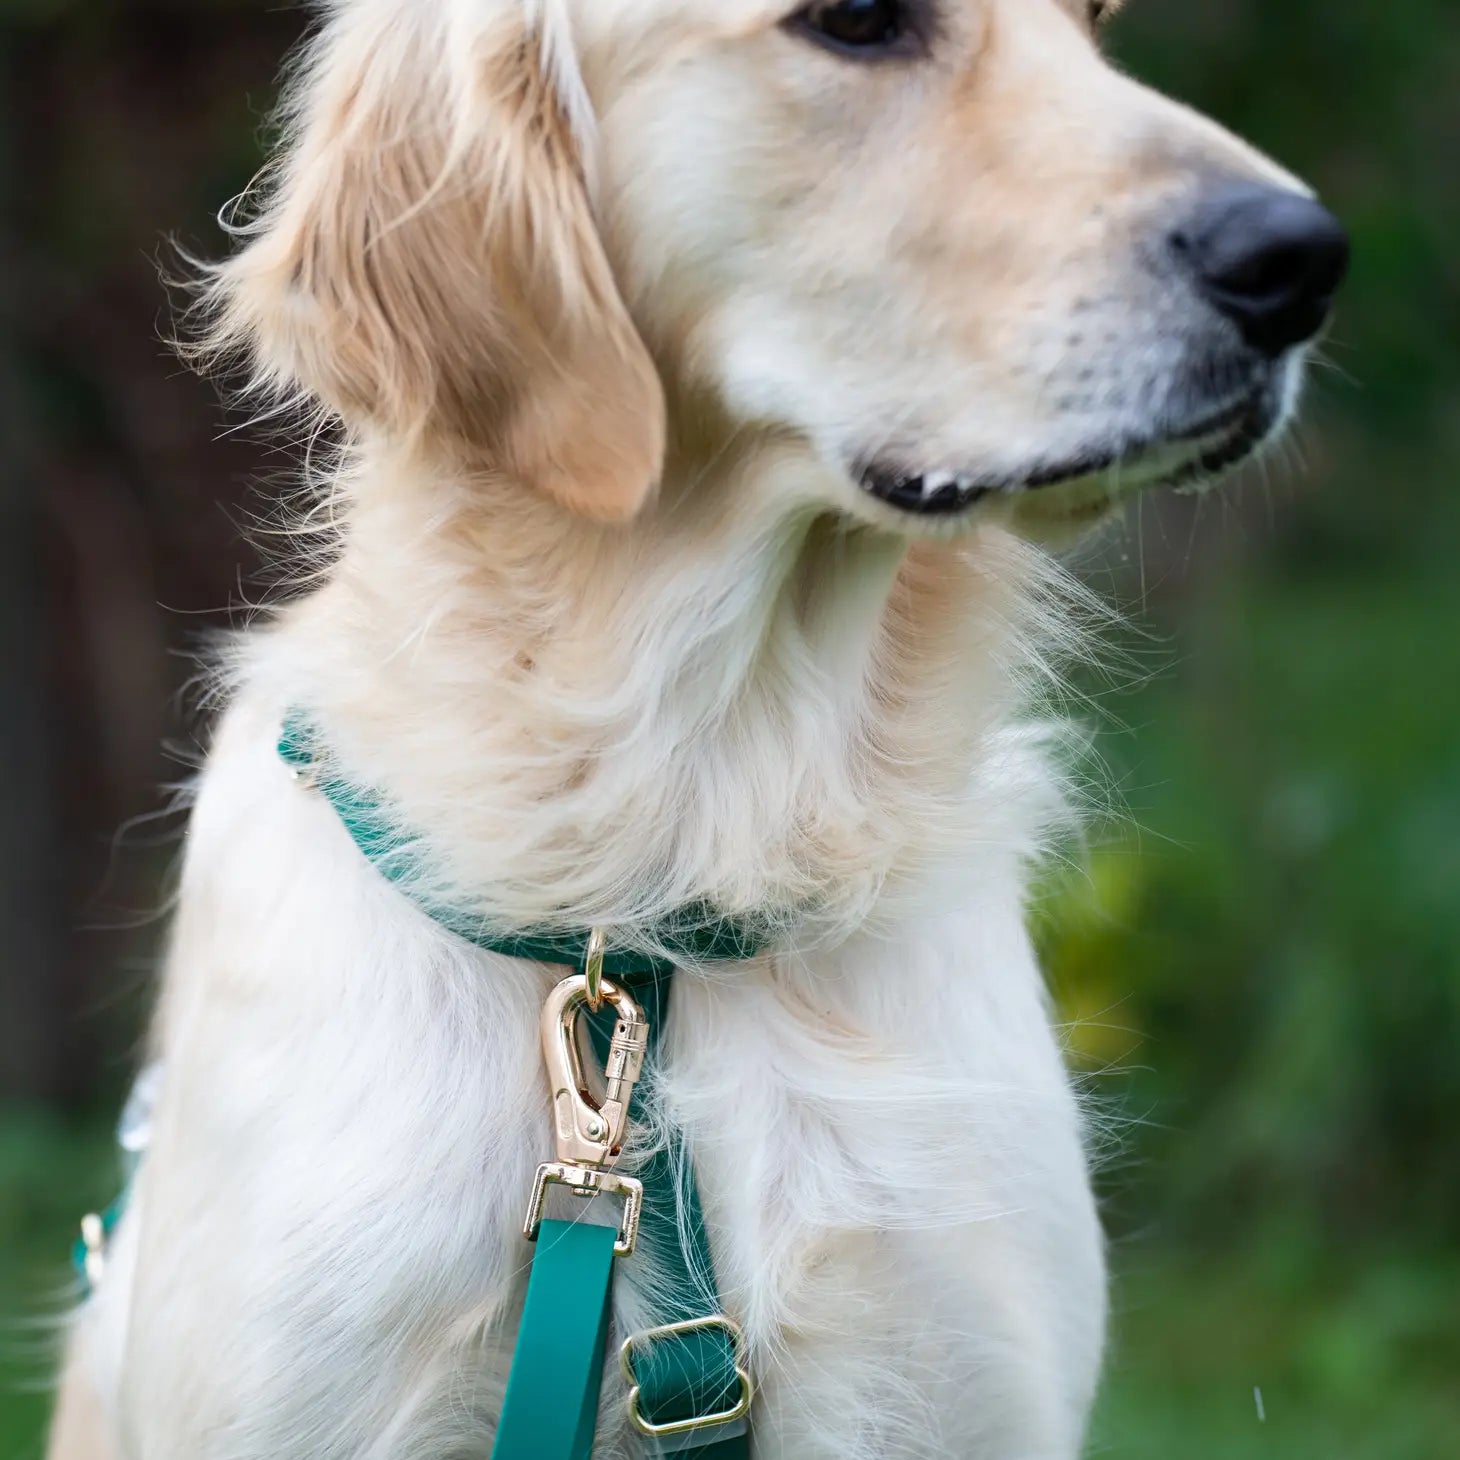 Waterproof Dog Harness - Meadow Green